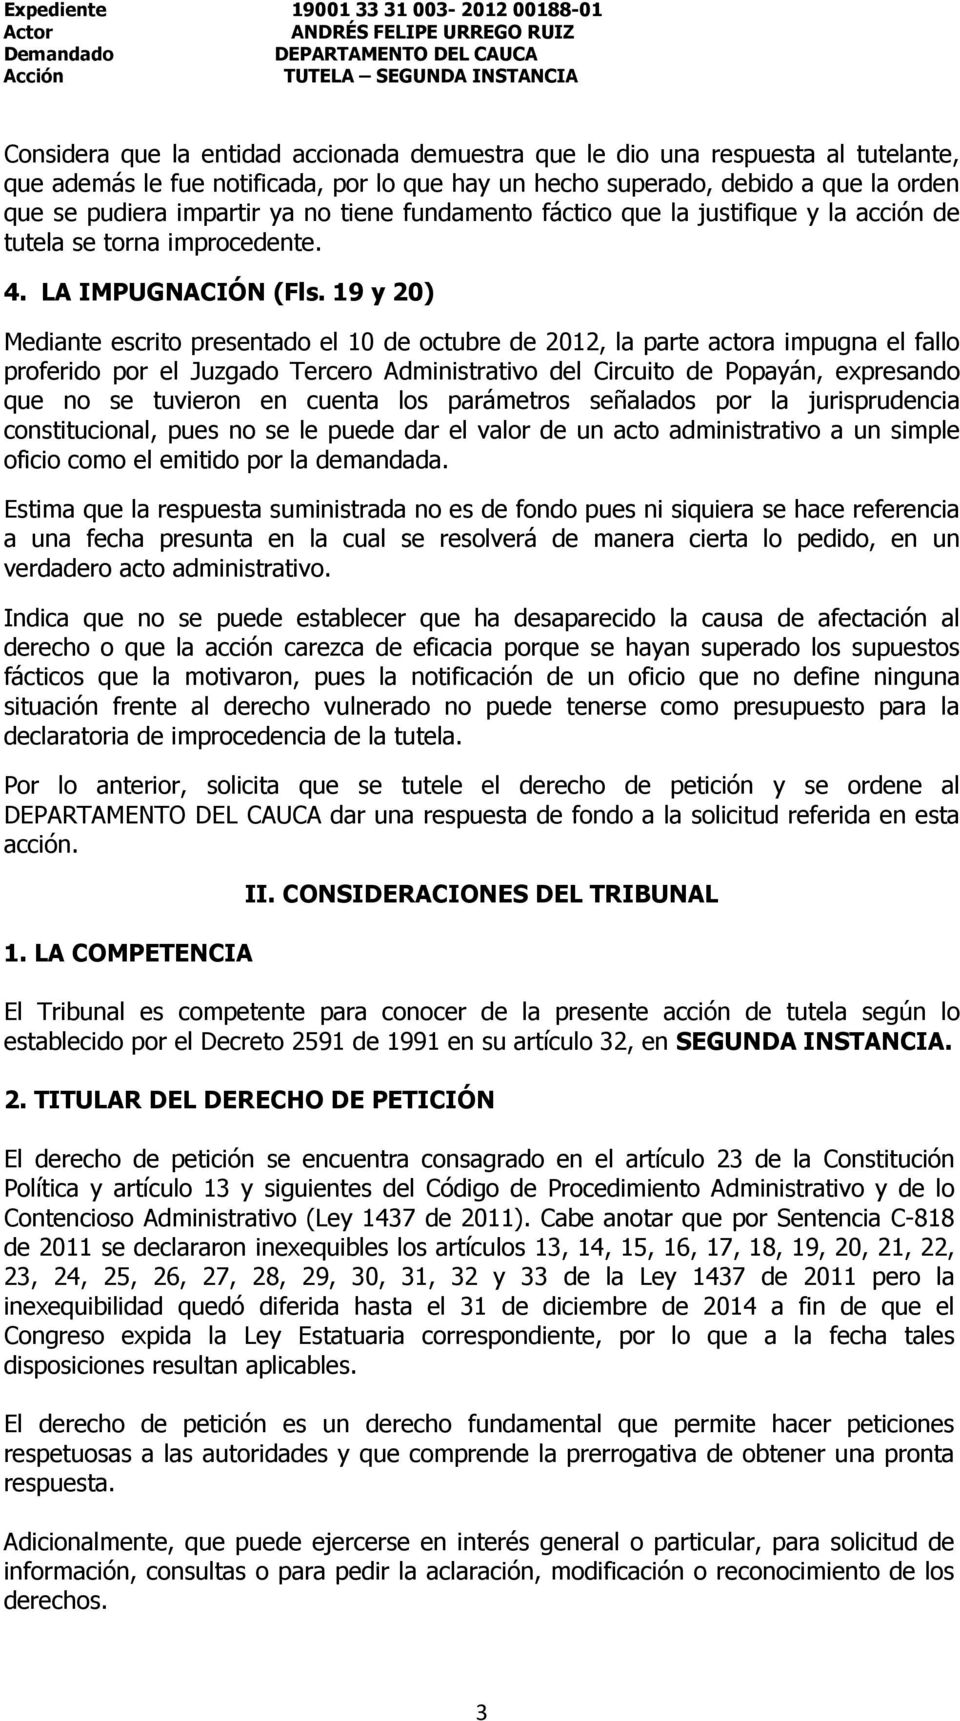 19 y 20) Mediante escrito presentado el 10 de octubre de 2012, la parte actora impugna el fallo proferido por el Juzgado Tercero Administrativo del Circuito de Popayán, expresando que no se tuvieron